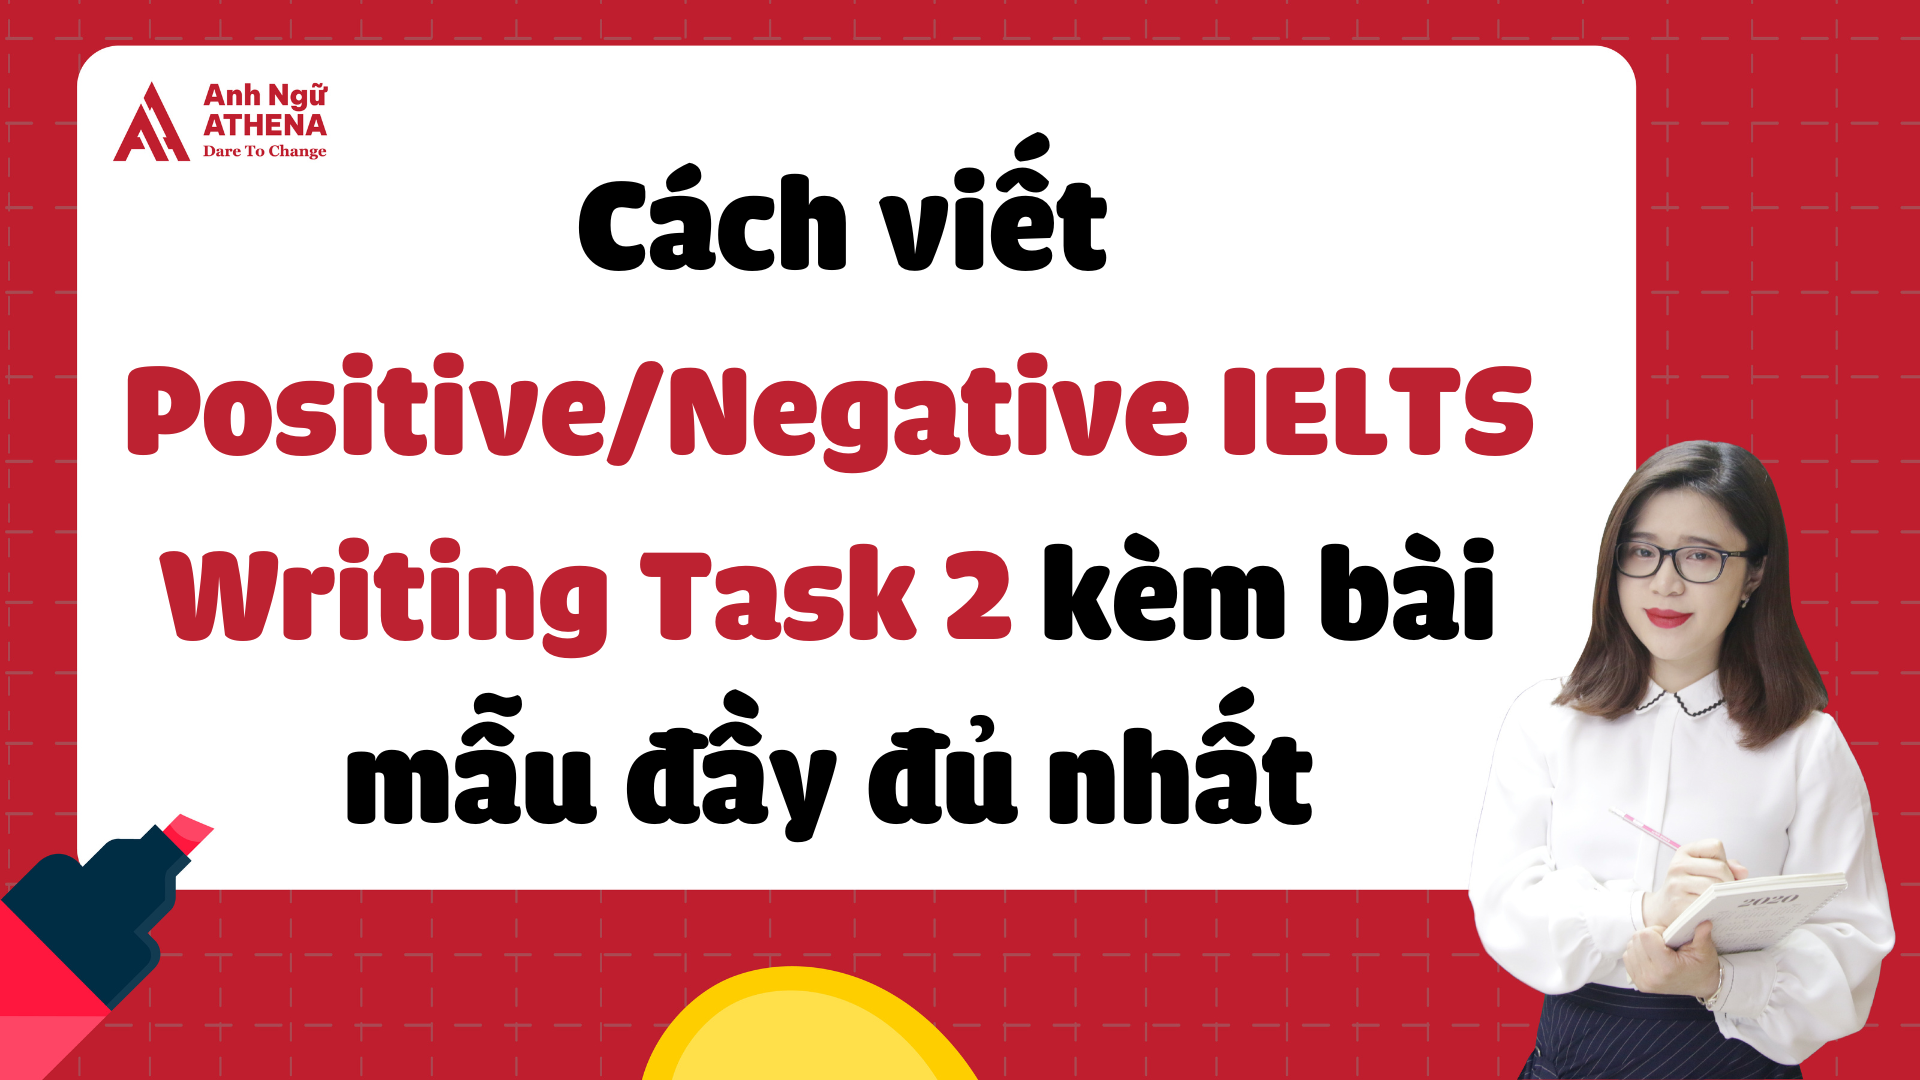 Cách viết Positive/Negative IELTS Writing Task 2 kèm bài mẫu đầy đủ nhất